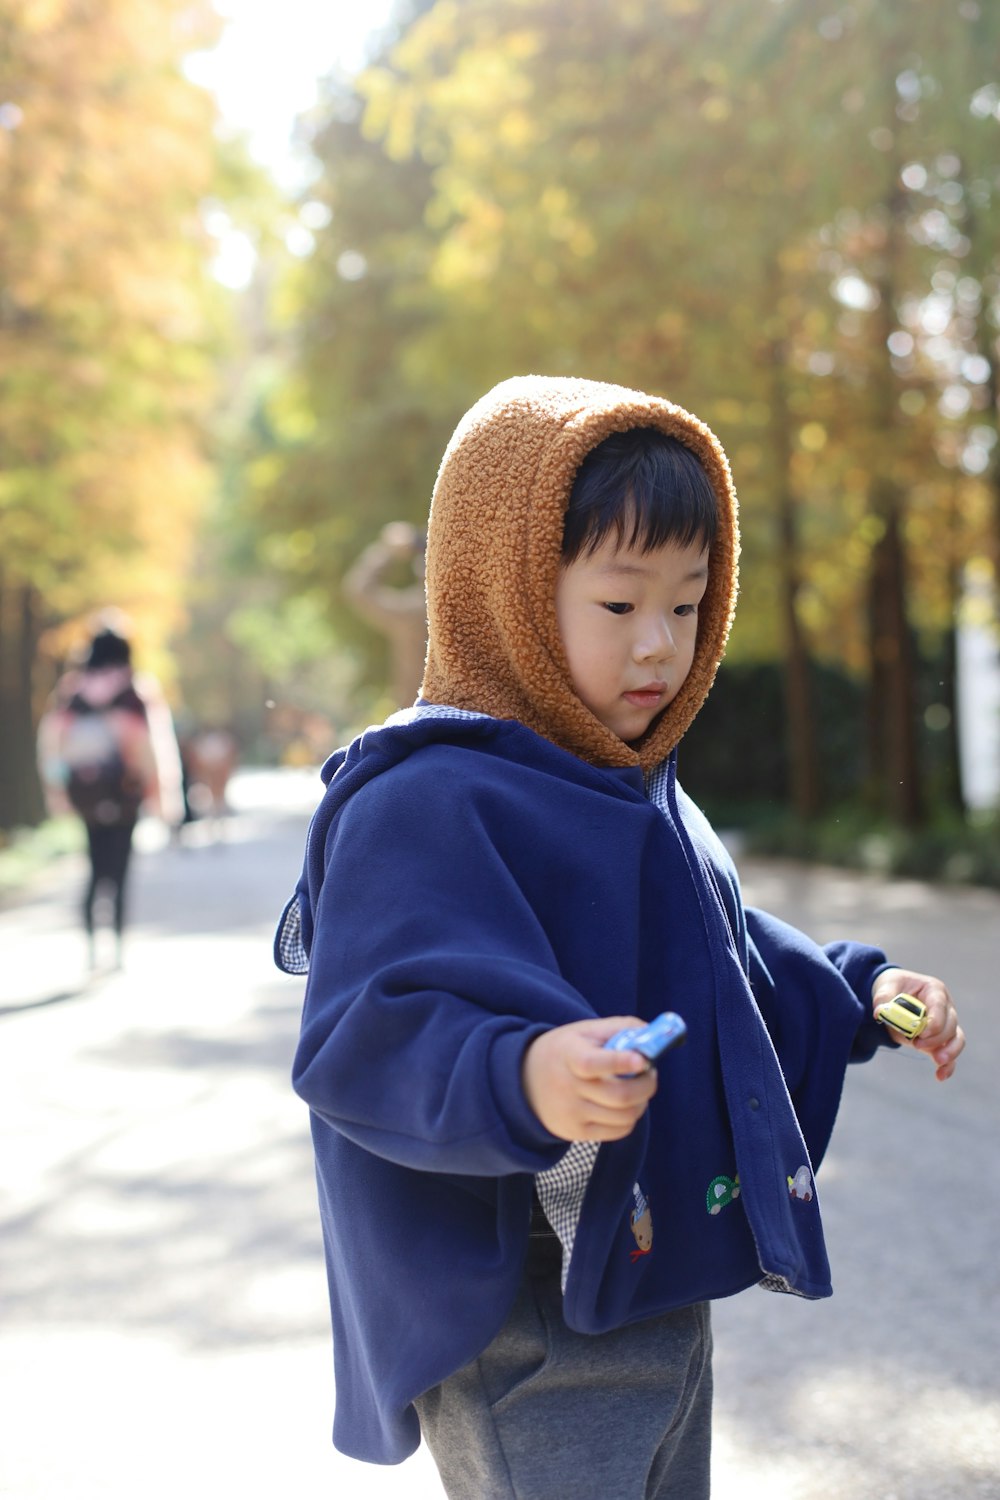 Un giovane ragazzo in una felpa blu con cappuccio che tiene un telefono cellulare